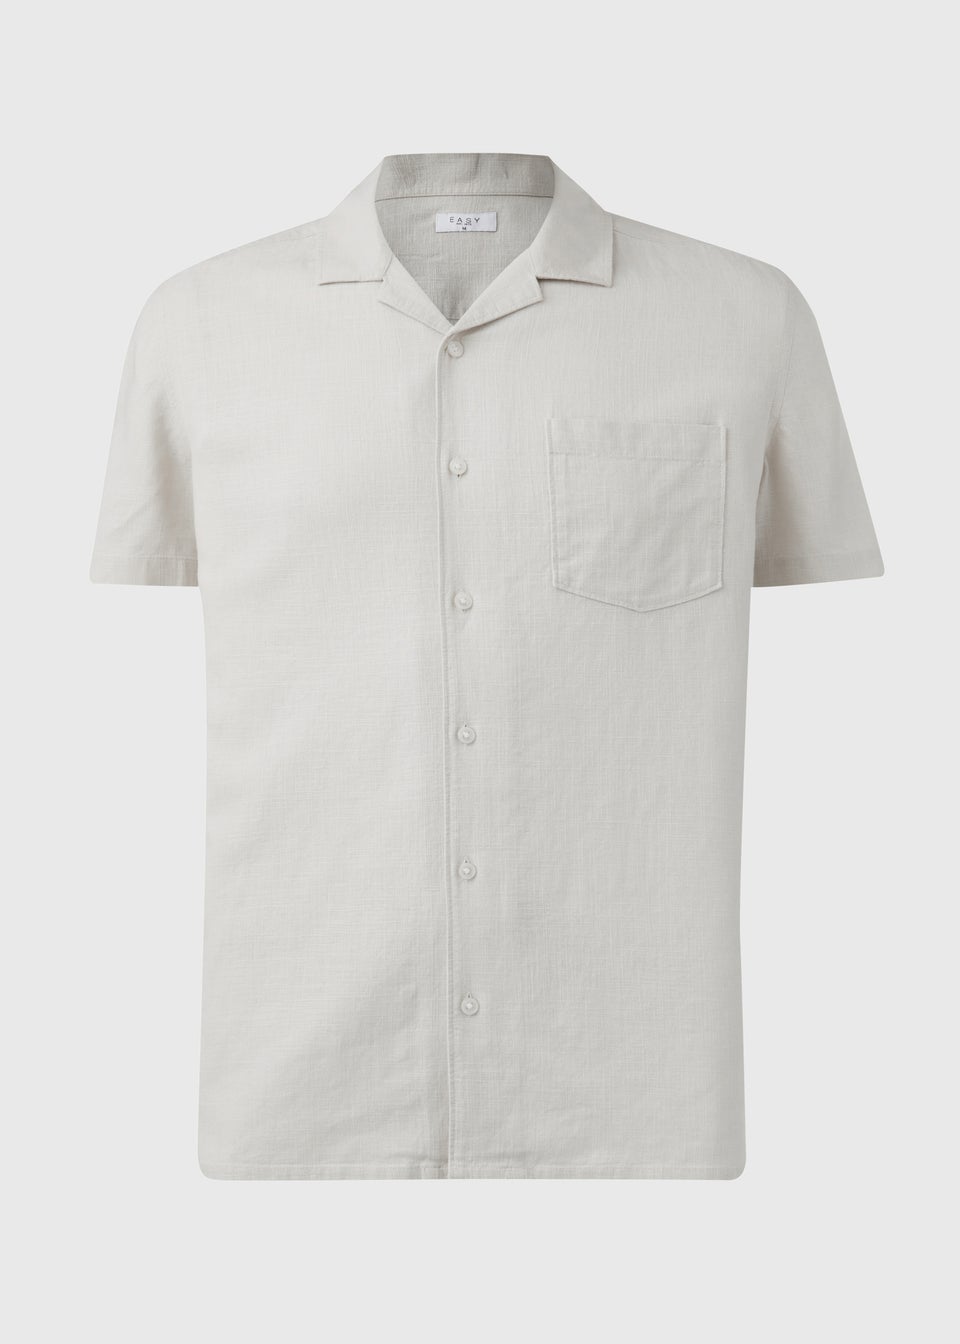 Ecru Linen Short Sleeve Shirt